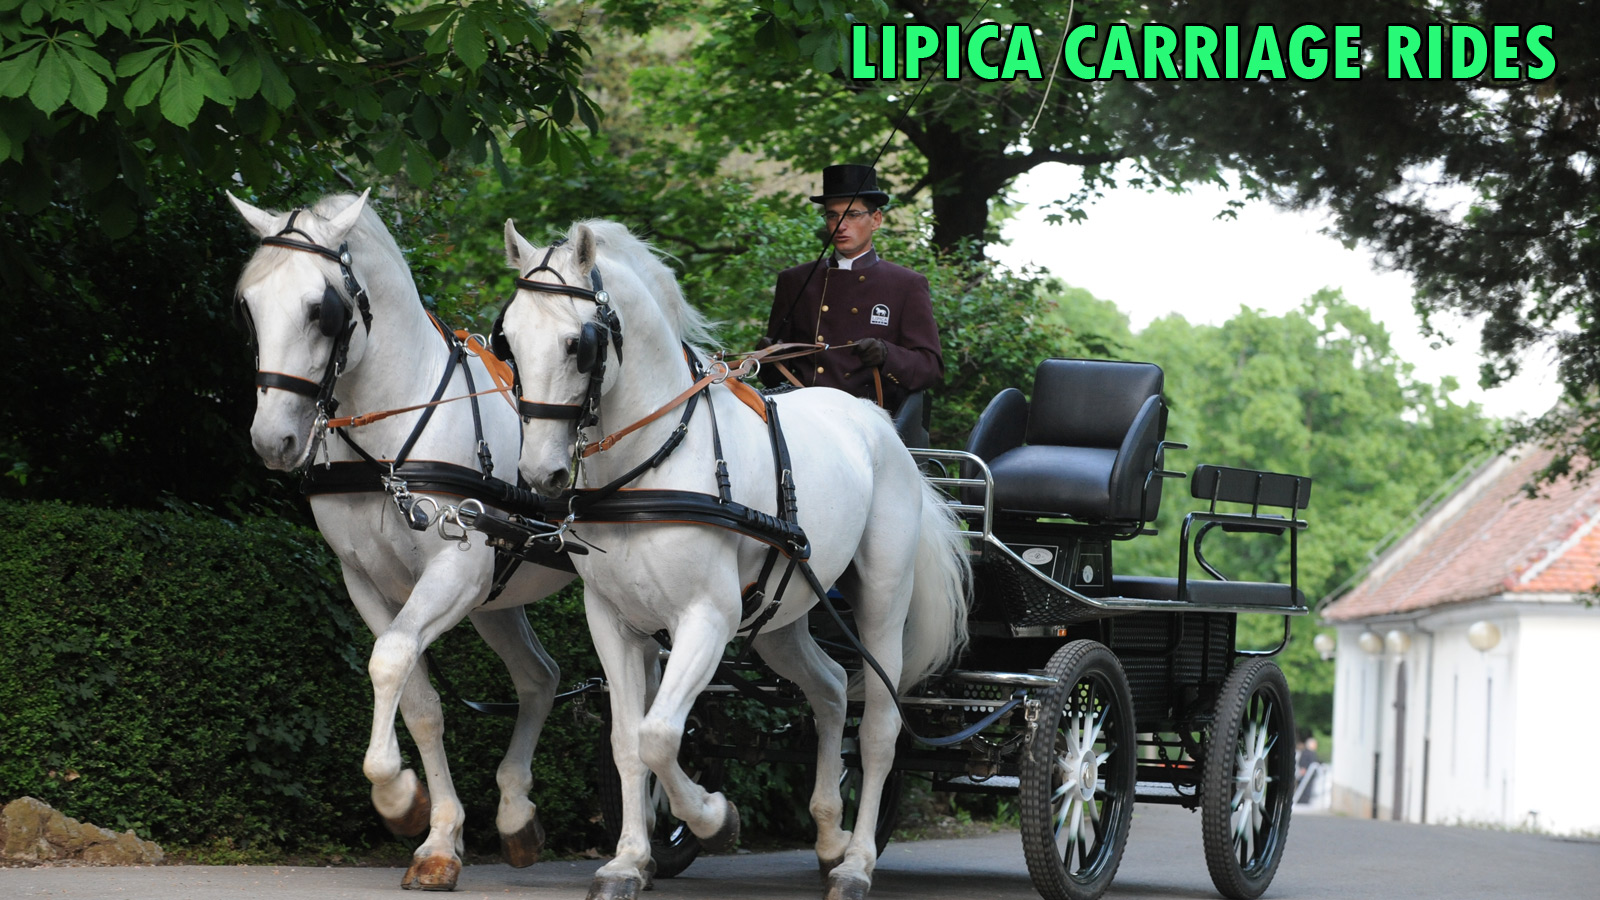 Carriage Rides around Lipica, Sloveniaforyou